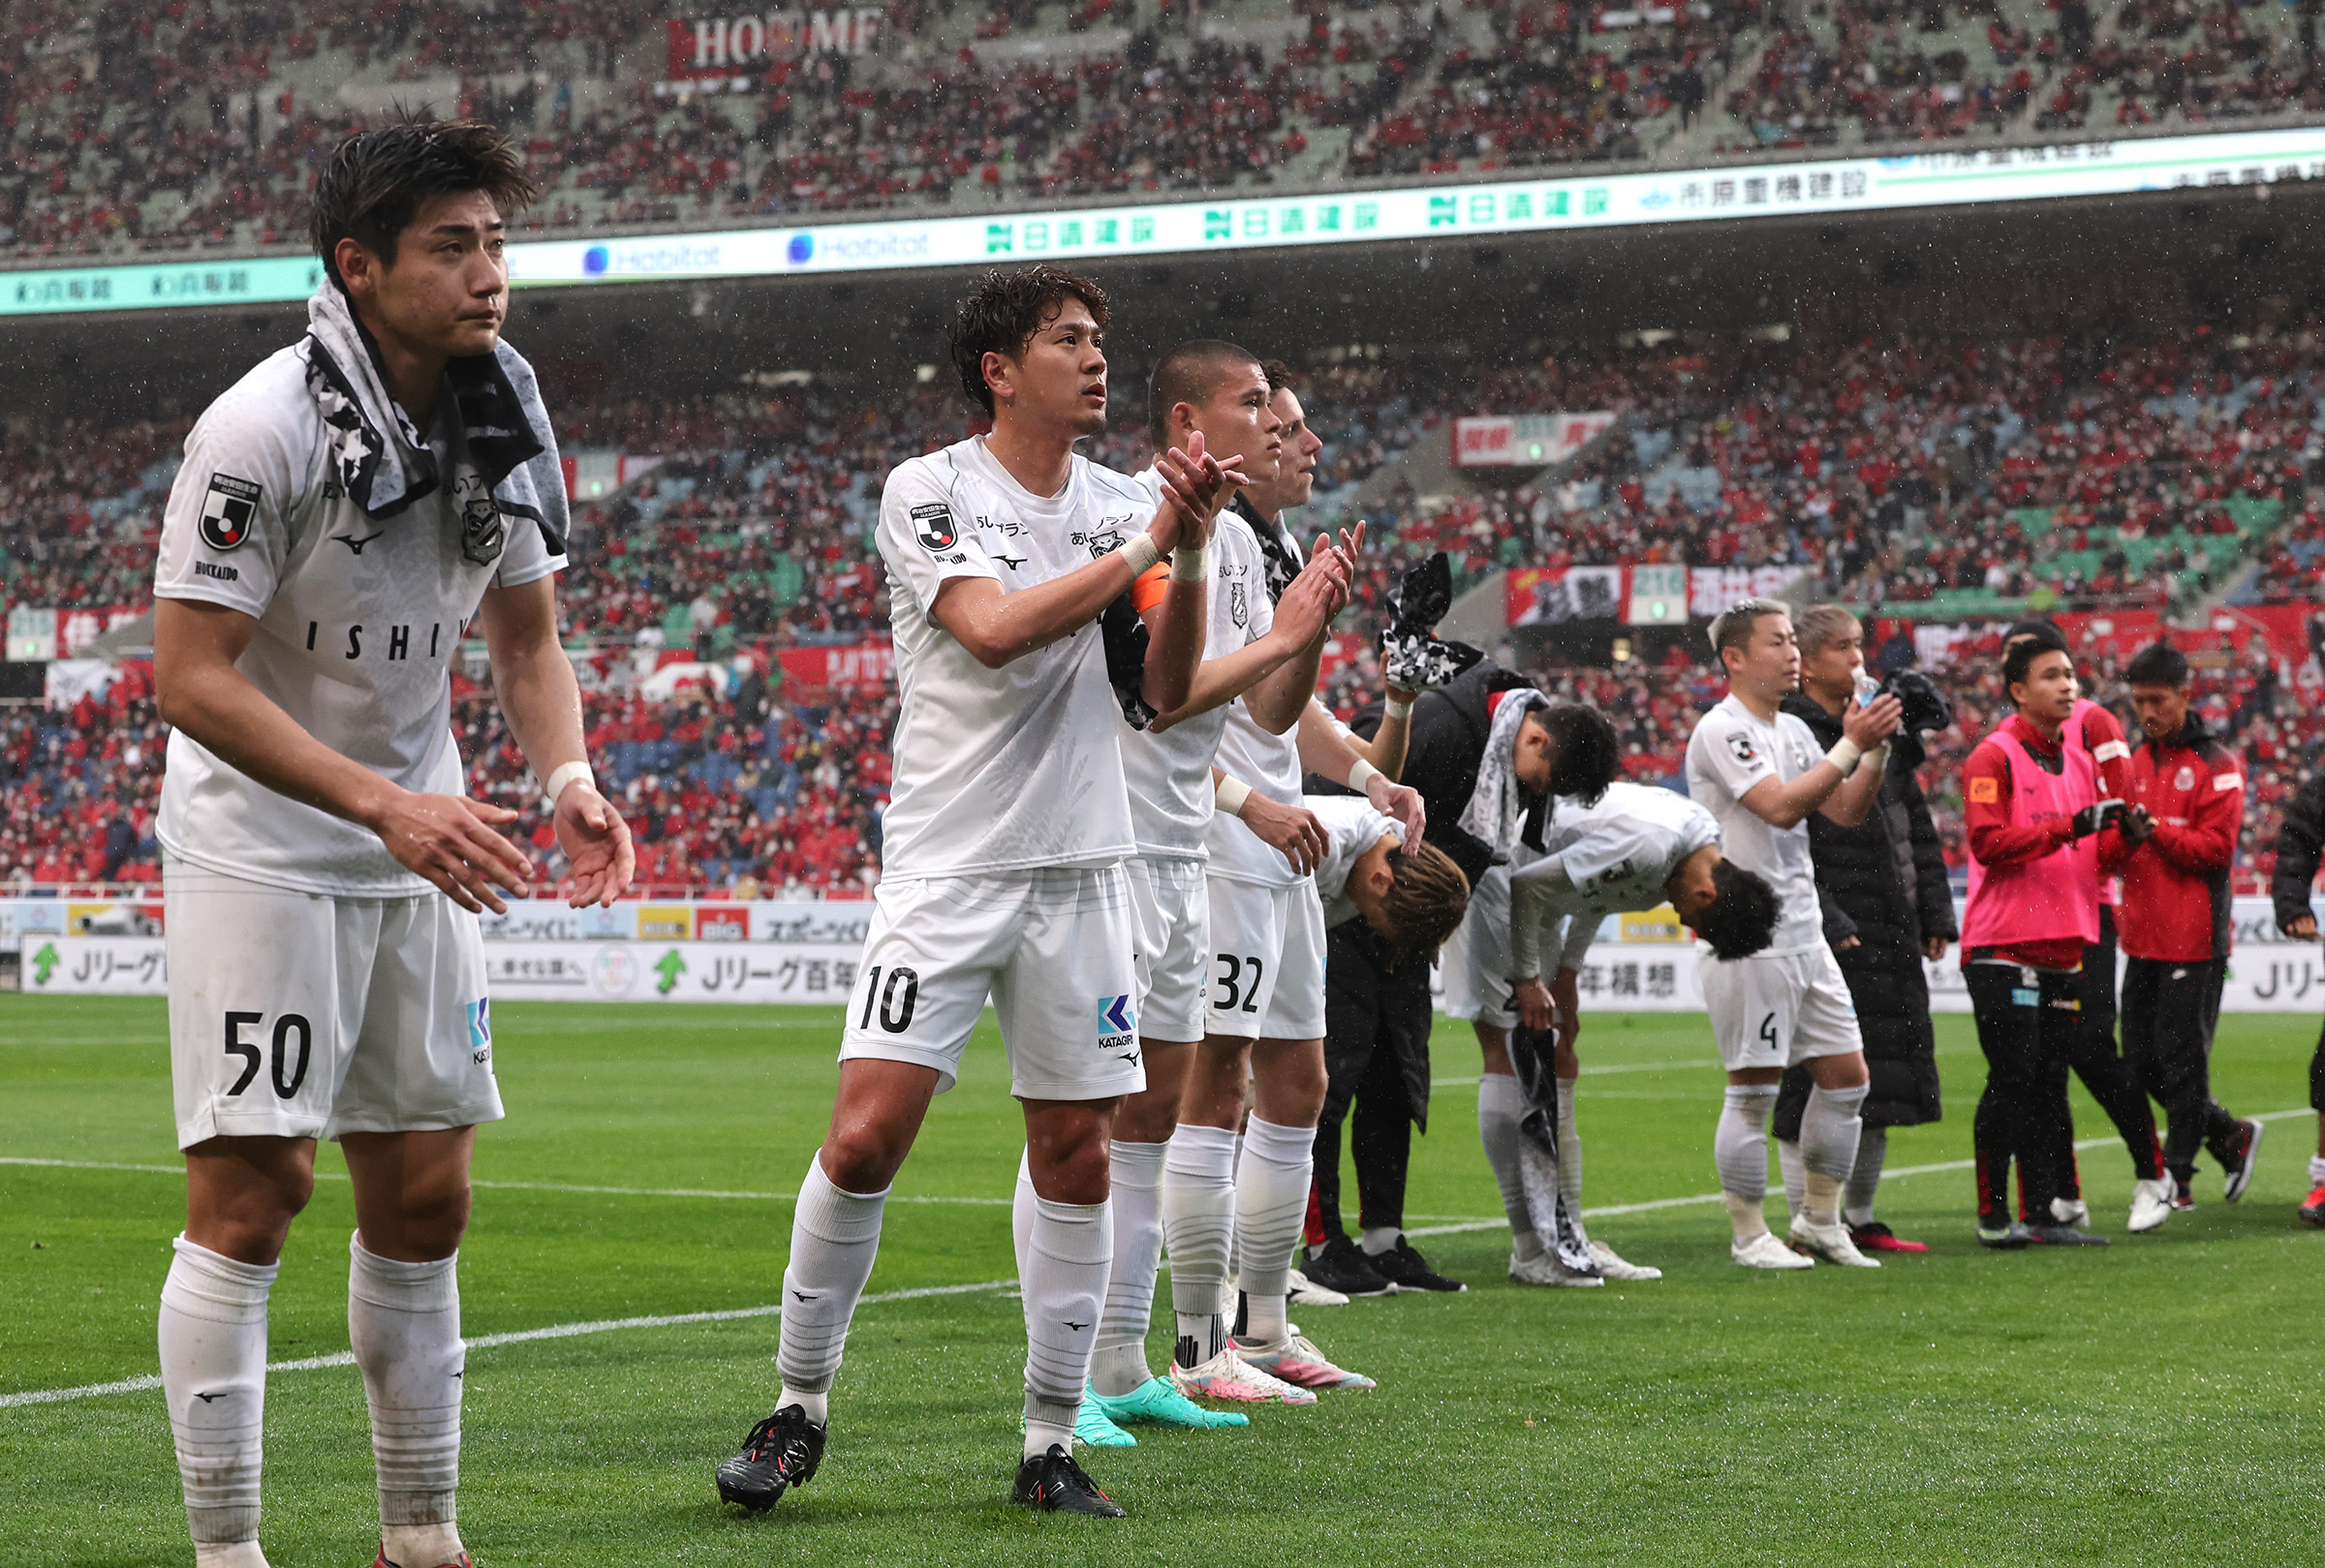 試合後、サポーターに挨拶する札幌の選手たち